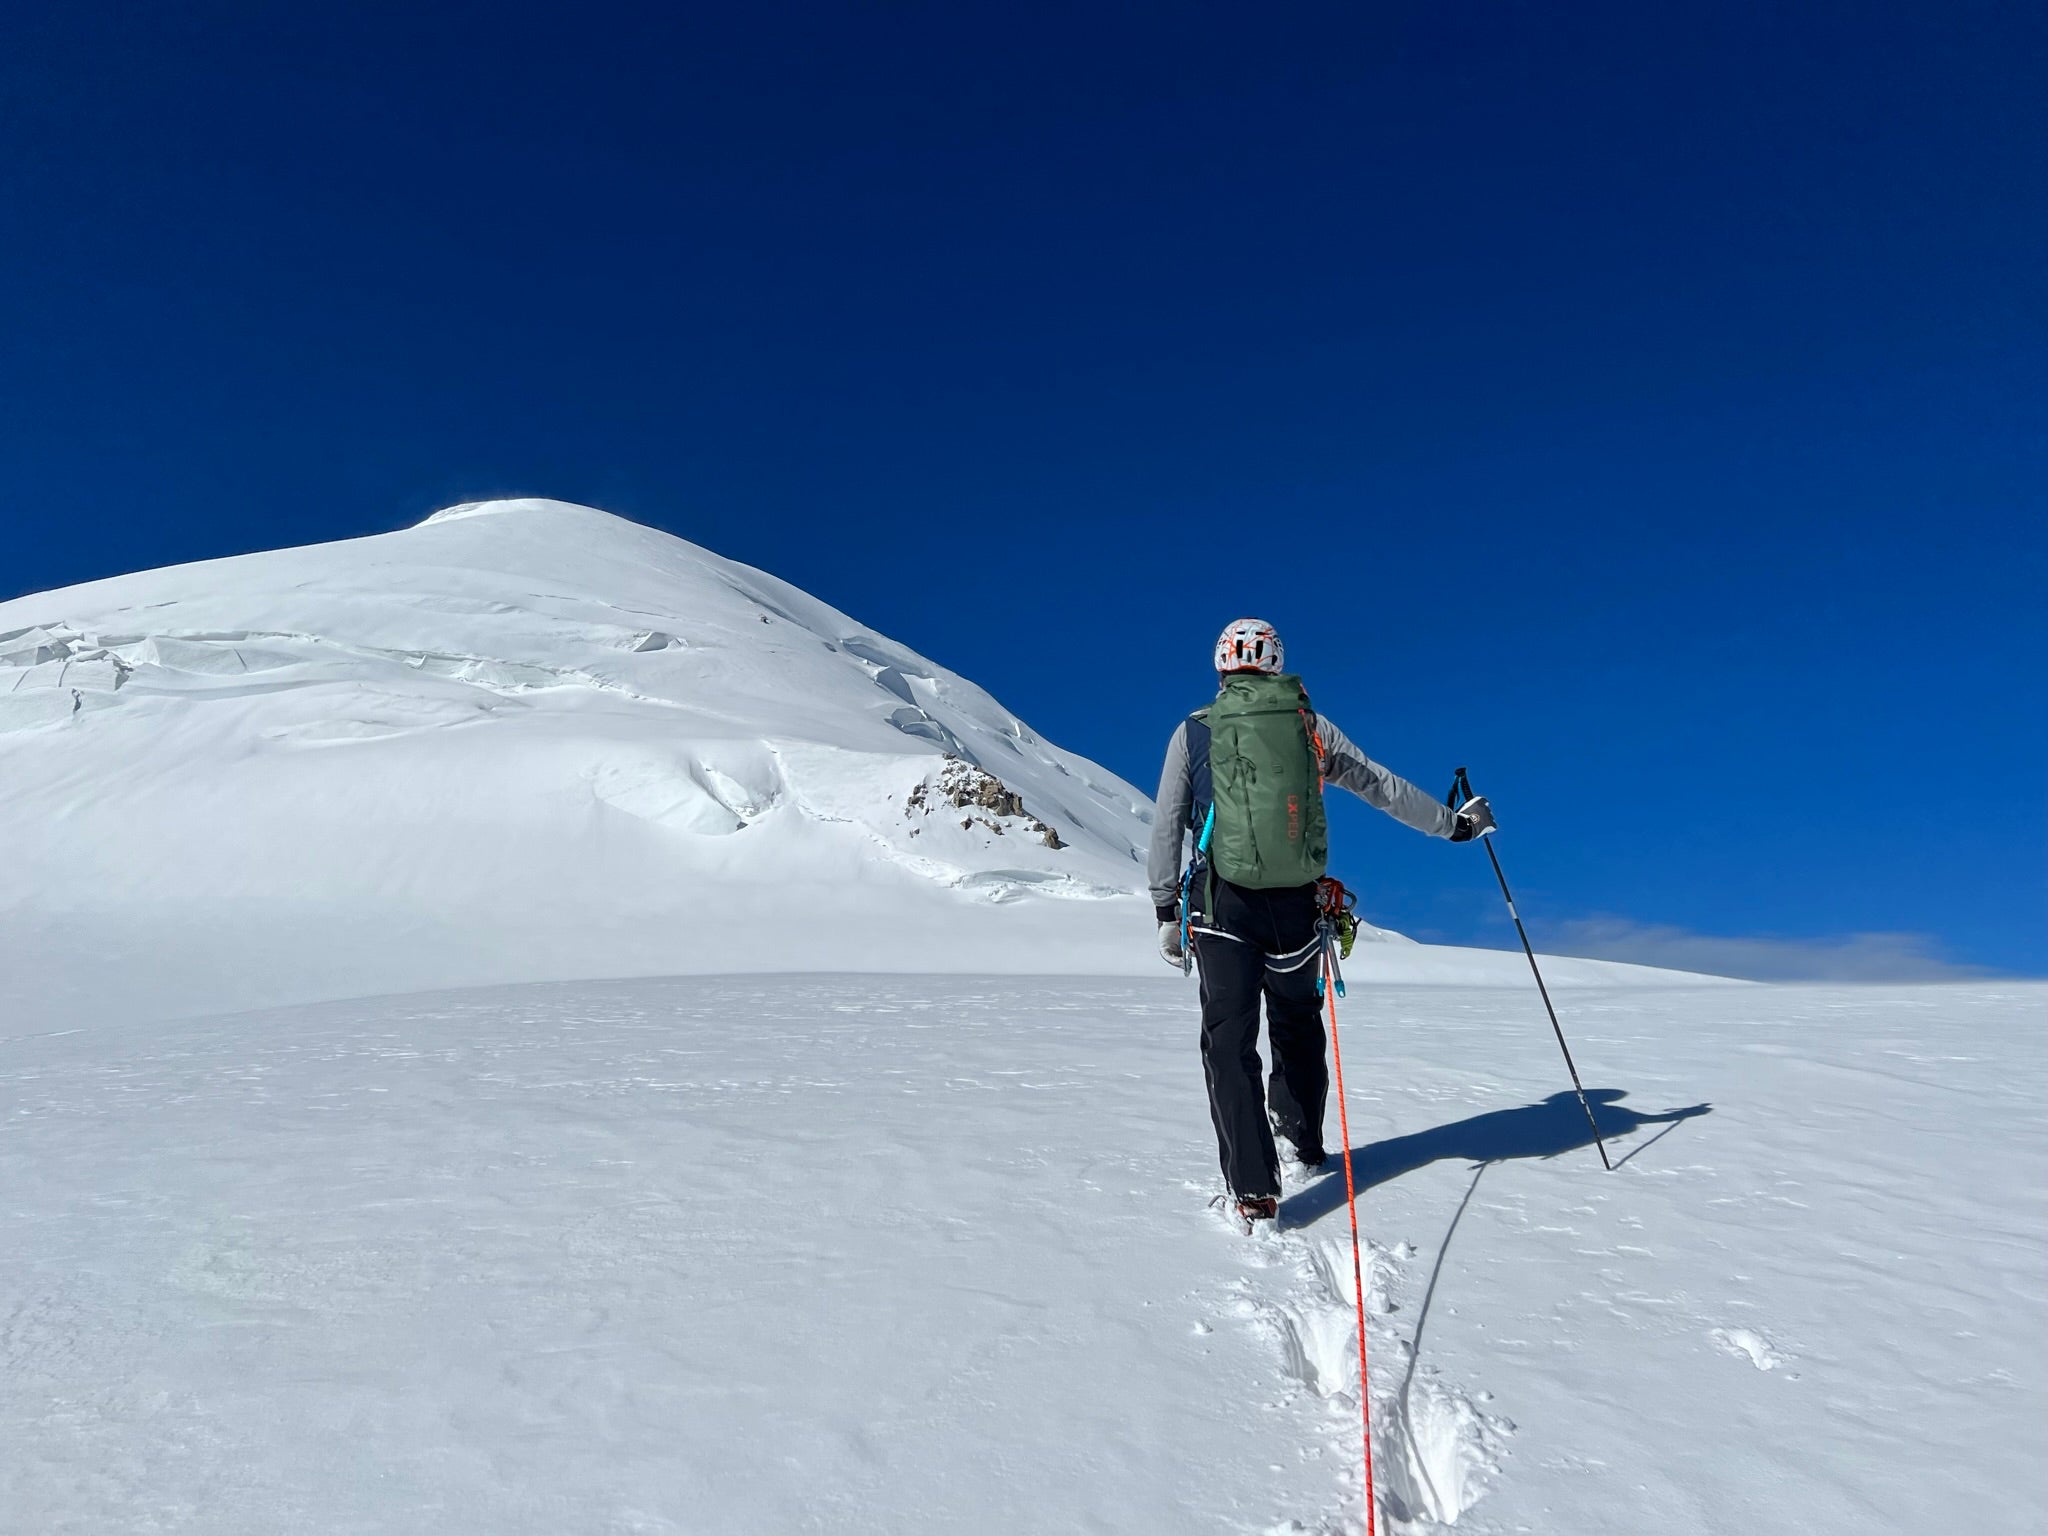 Chamonix mit Mont Blanc 4808m Überschreitung